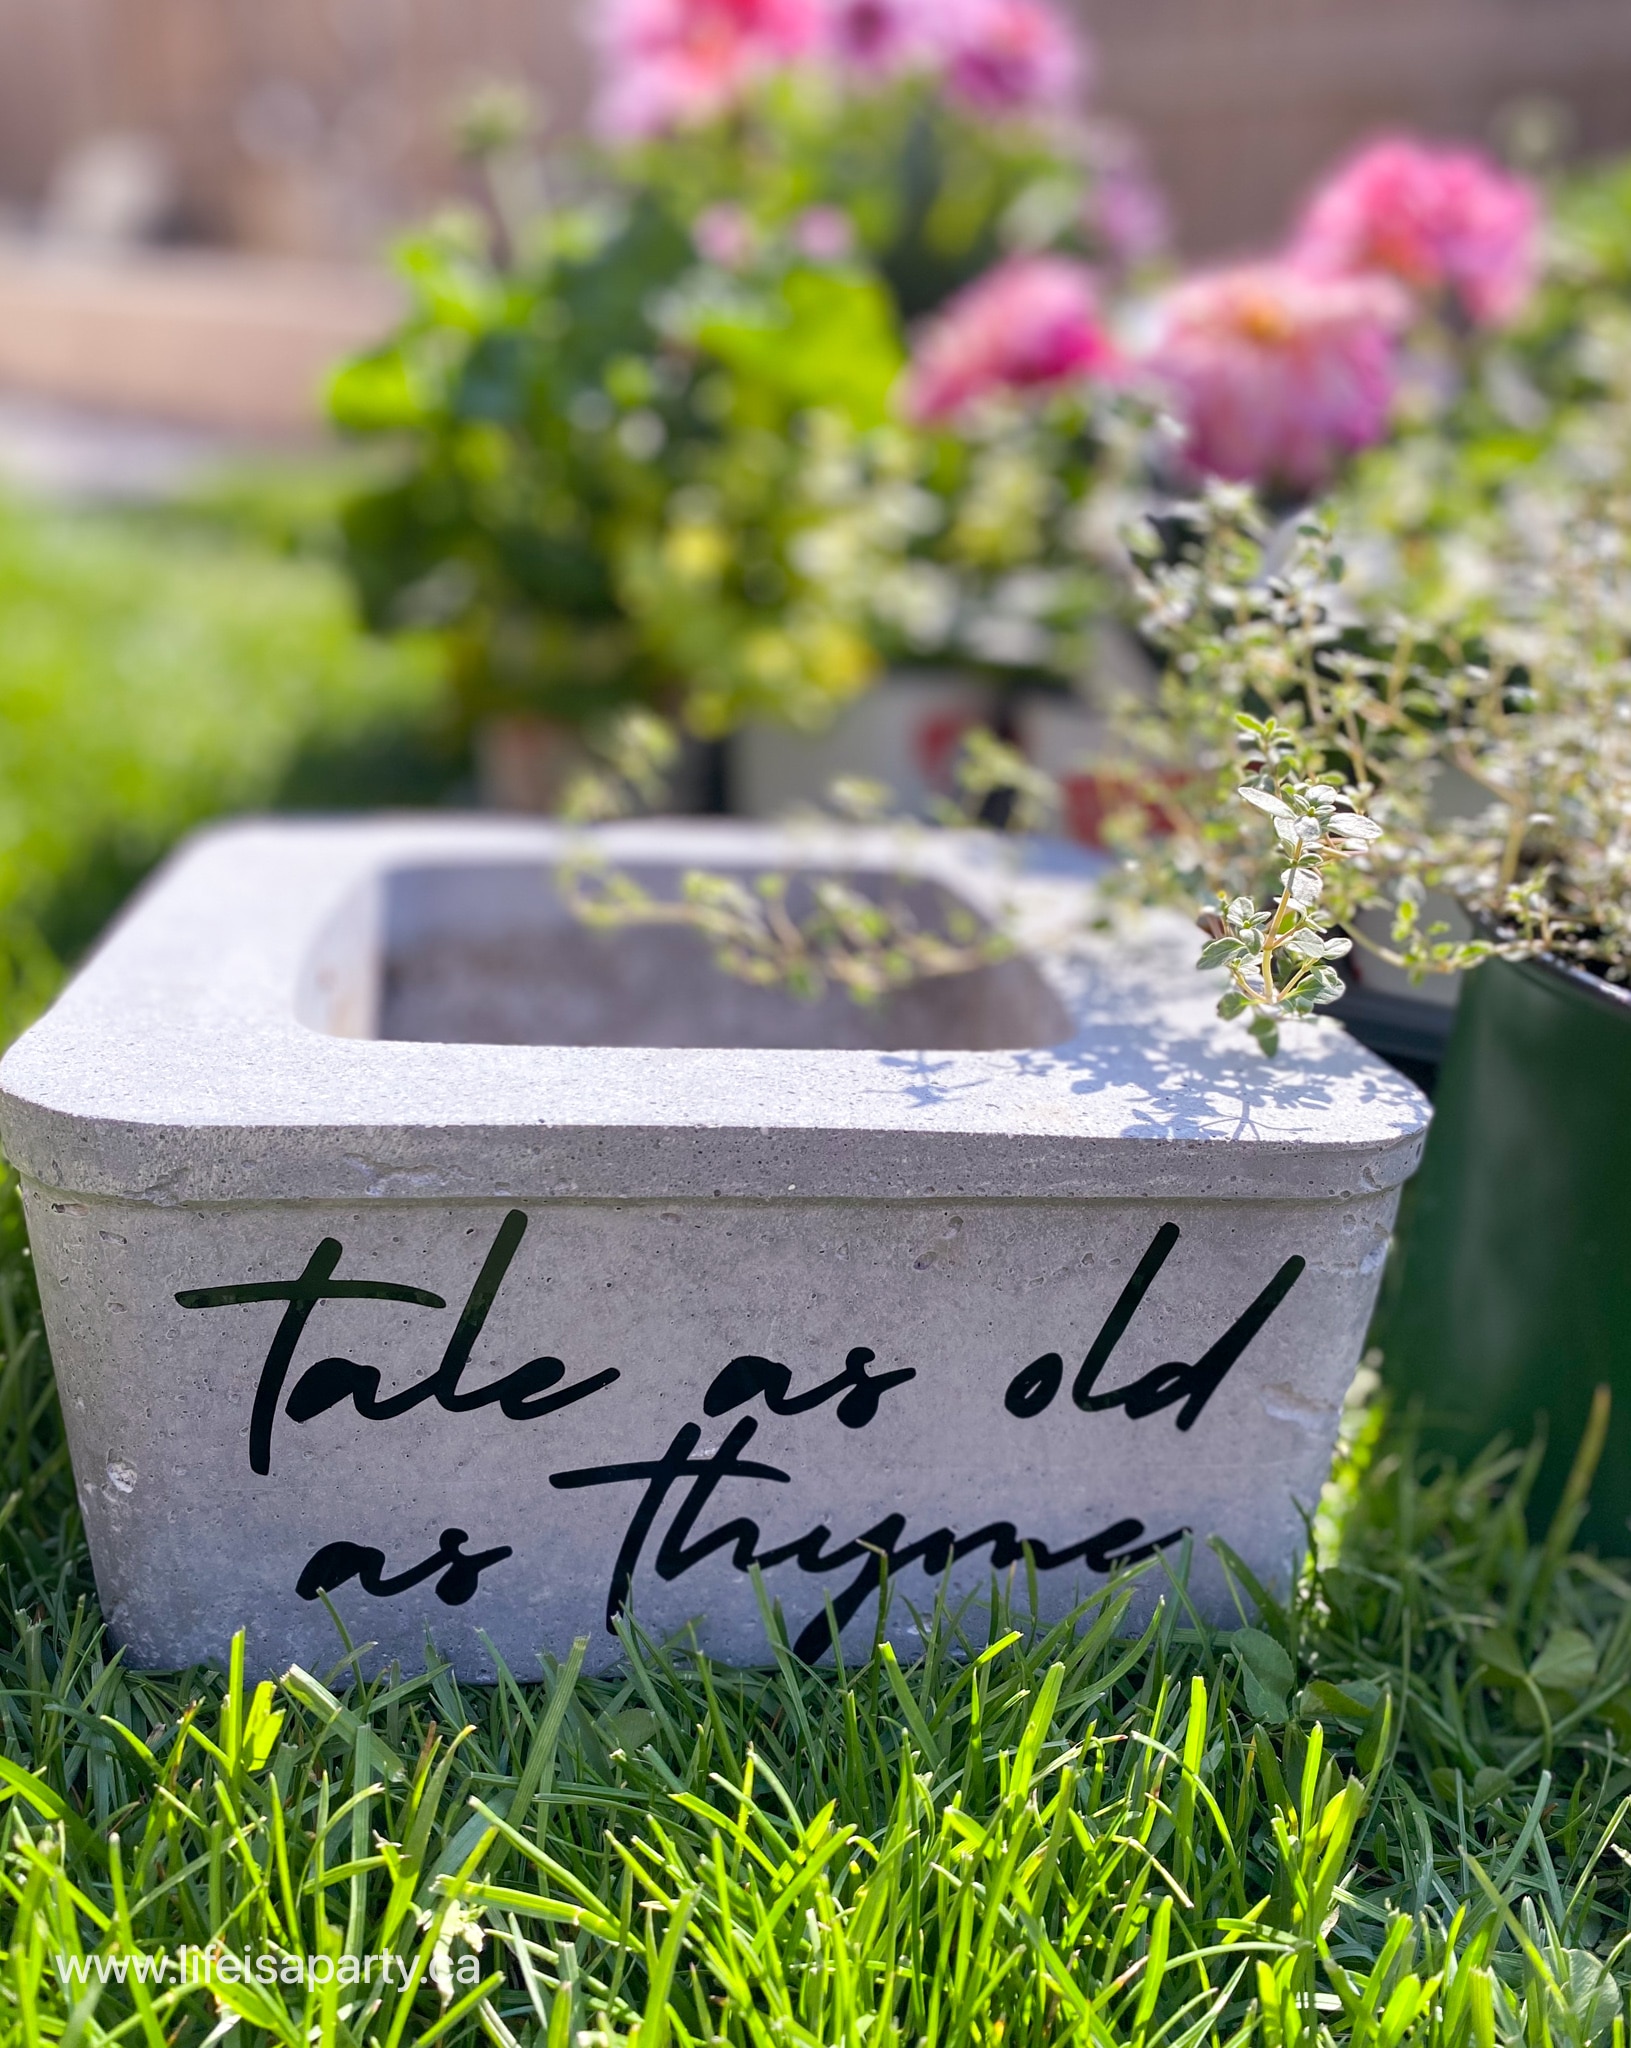 tale as old as thyme garden pot DIY